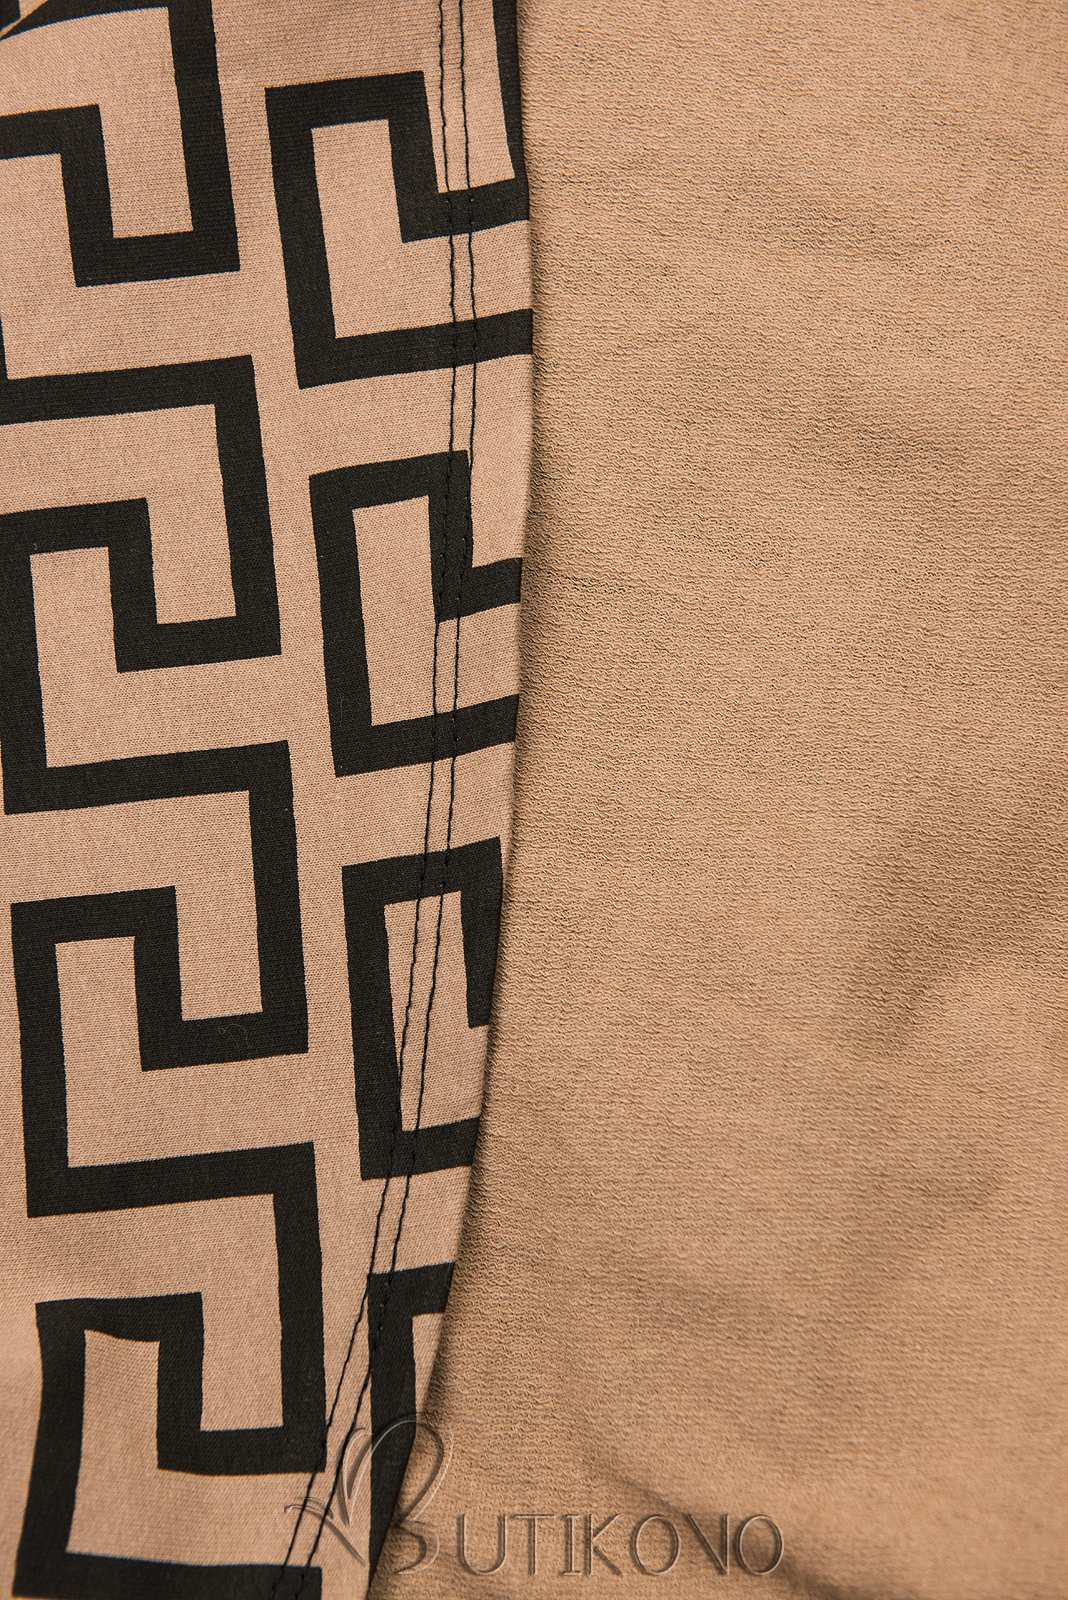 Hnedé vzorované šaty v maxi dĺžke